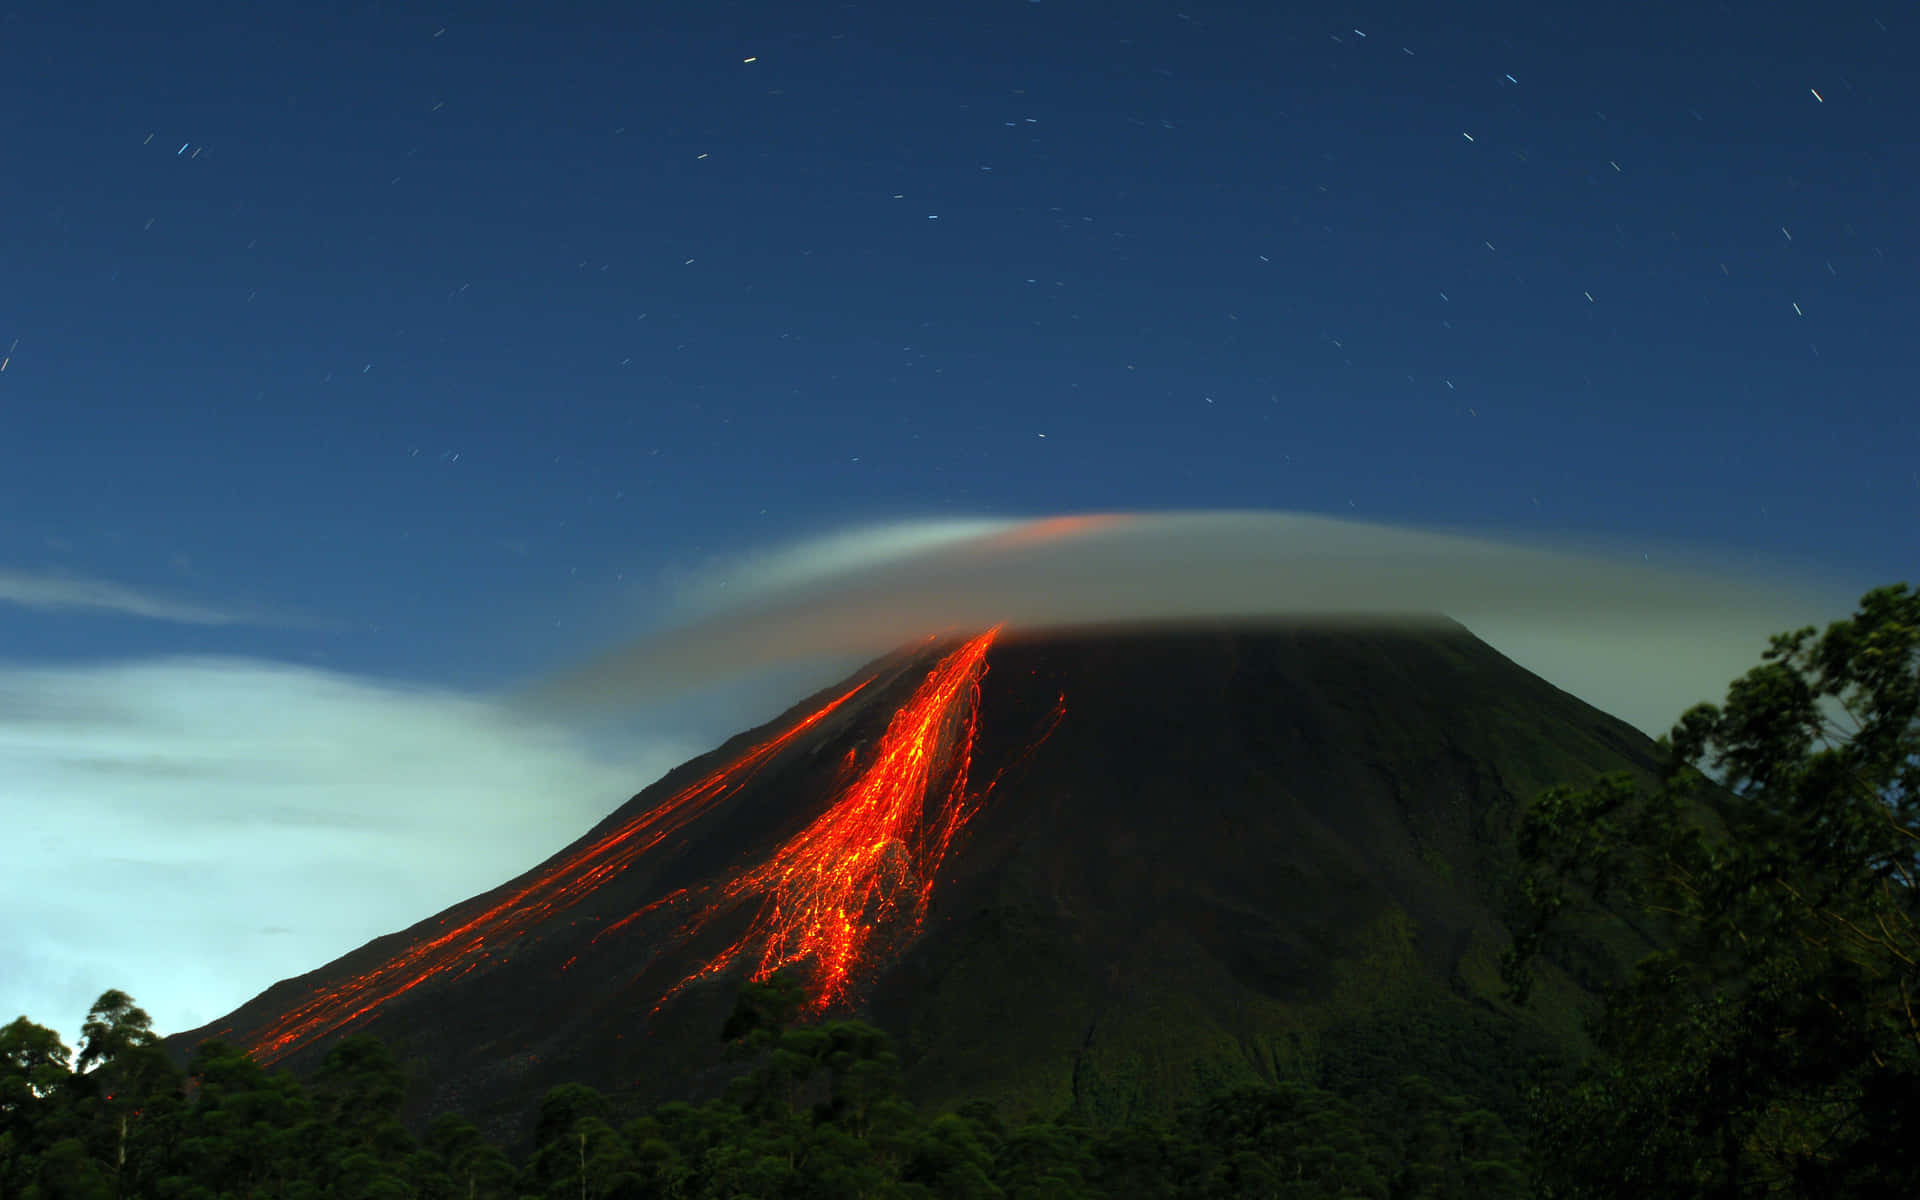 Einbeeindruckender Blick Auf Einen Vulkanausbruch.